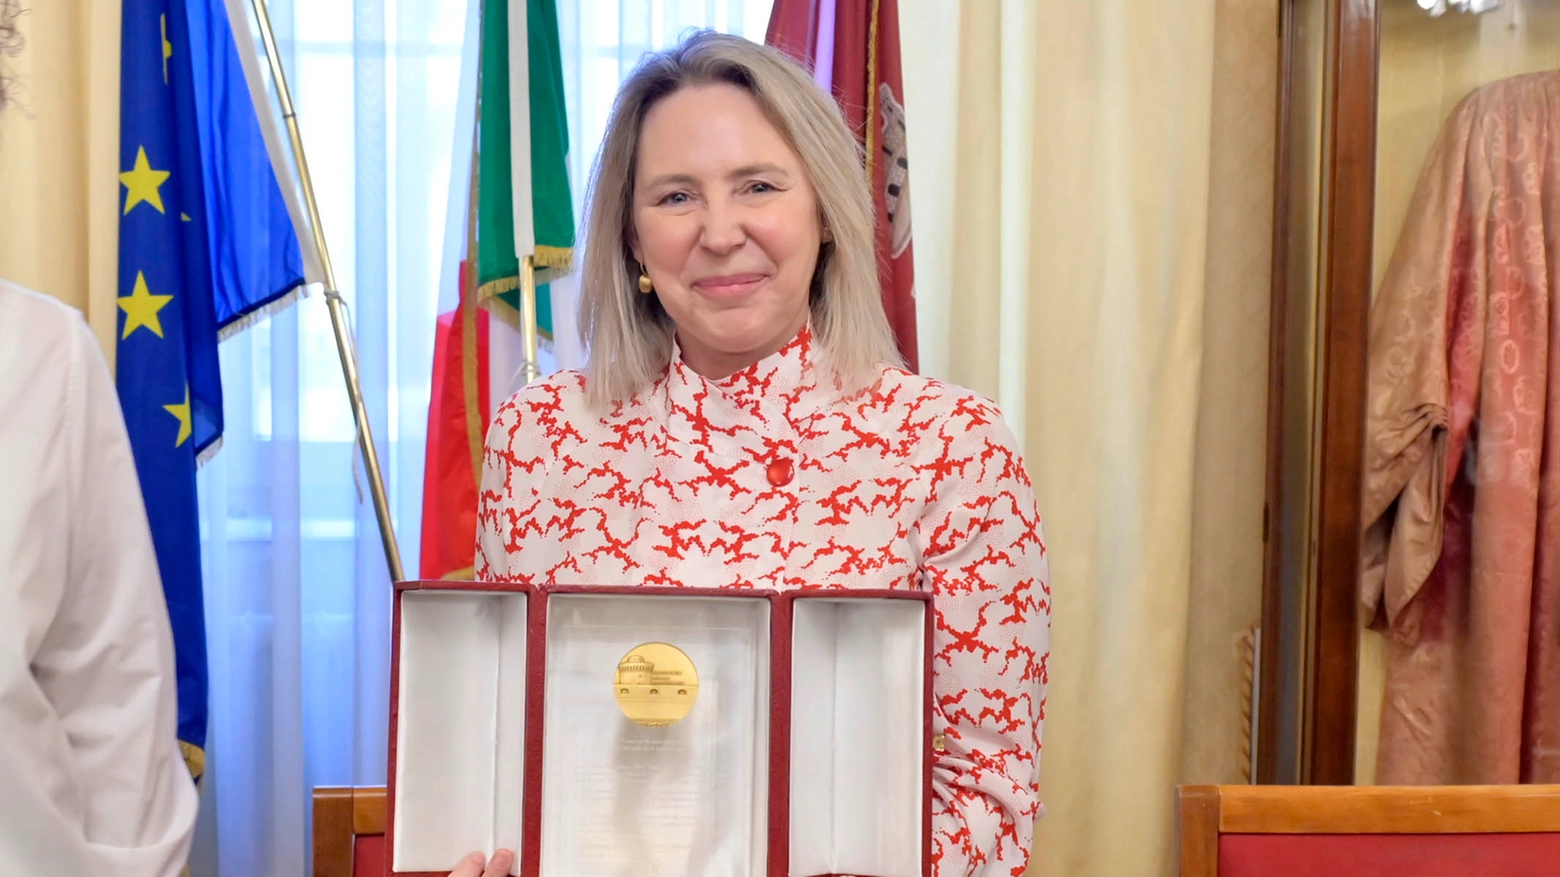 Ha ricevuto il prestigioso Premio Capperuccio: è la prima donna italiana al comando di una grande nave passeggeri